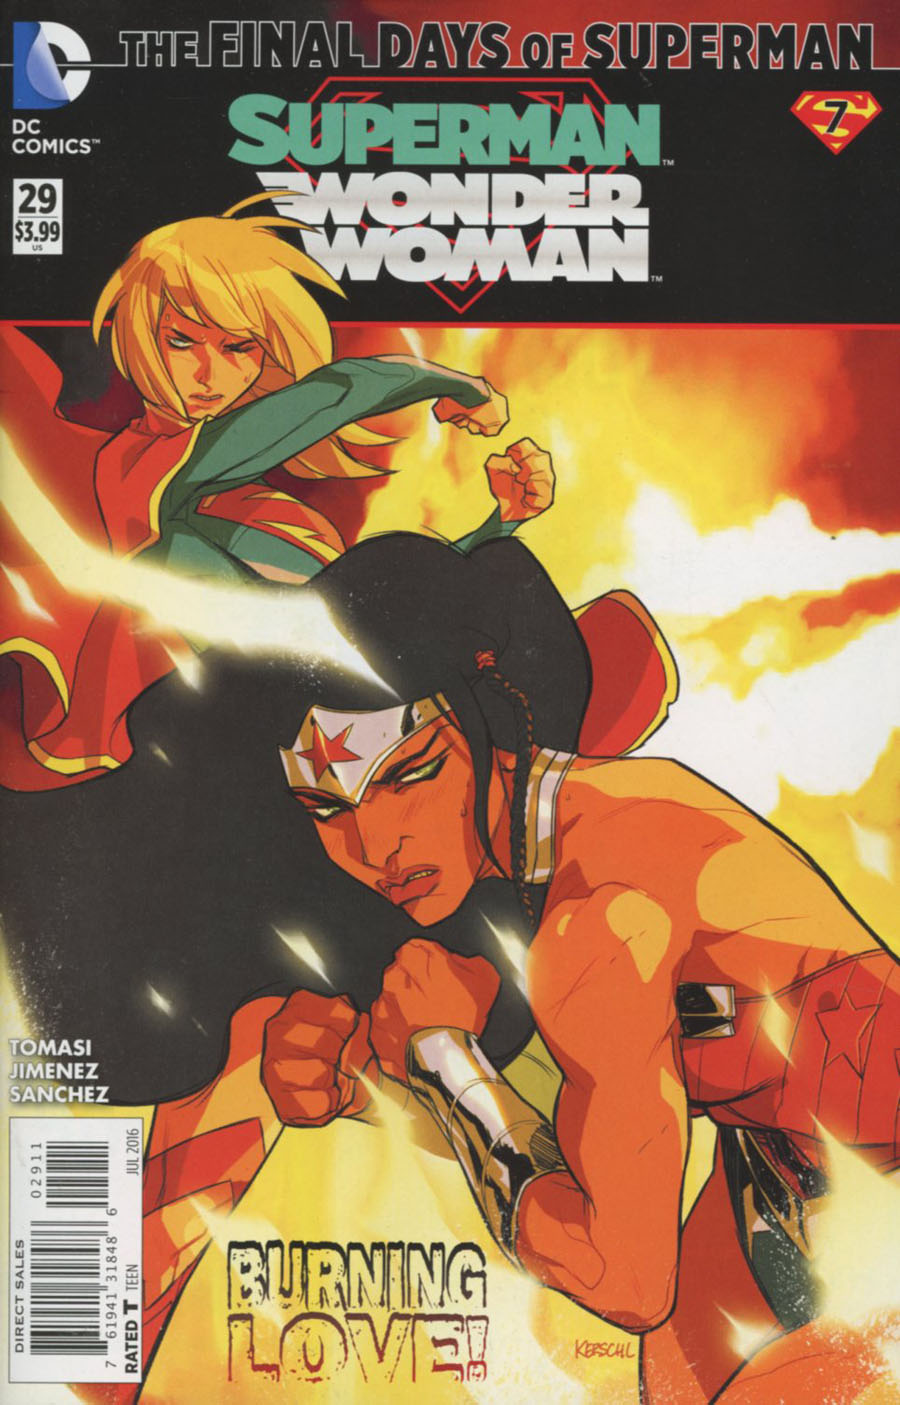 Superman Wonder Woman #29 (Super League Part 7)